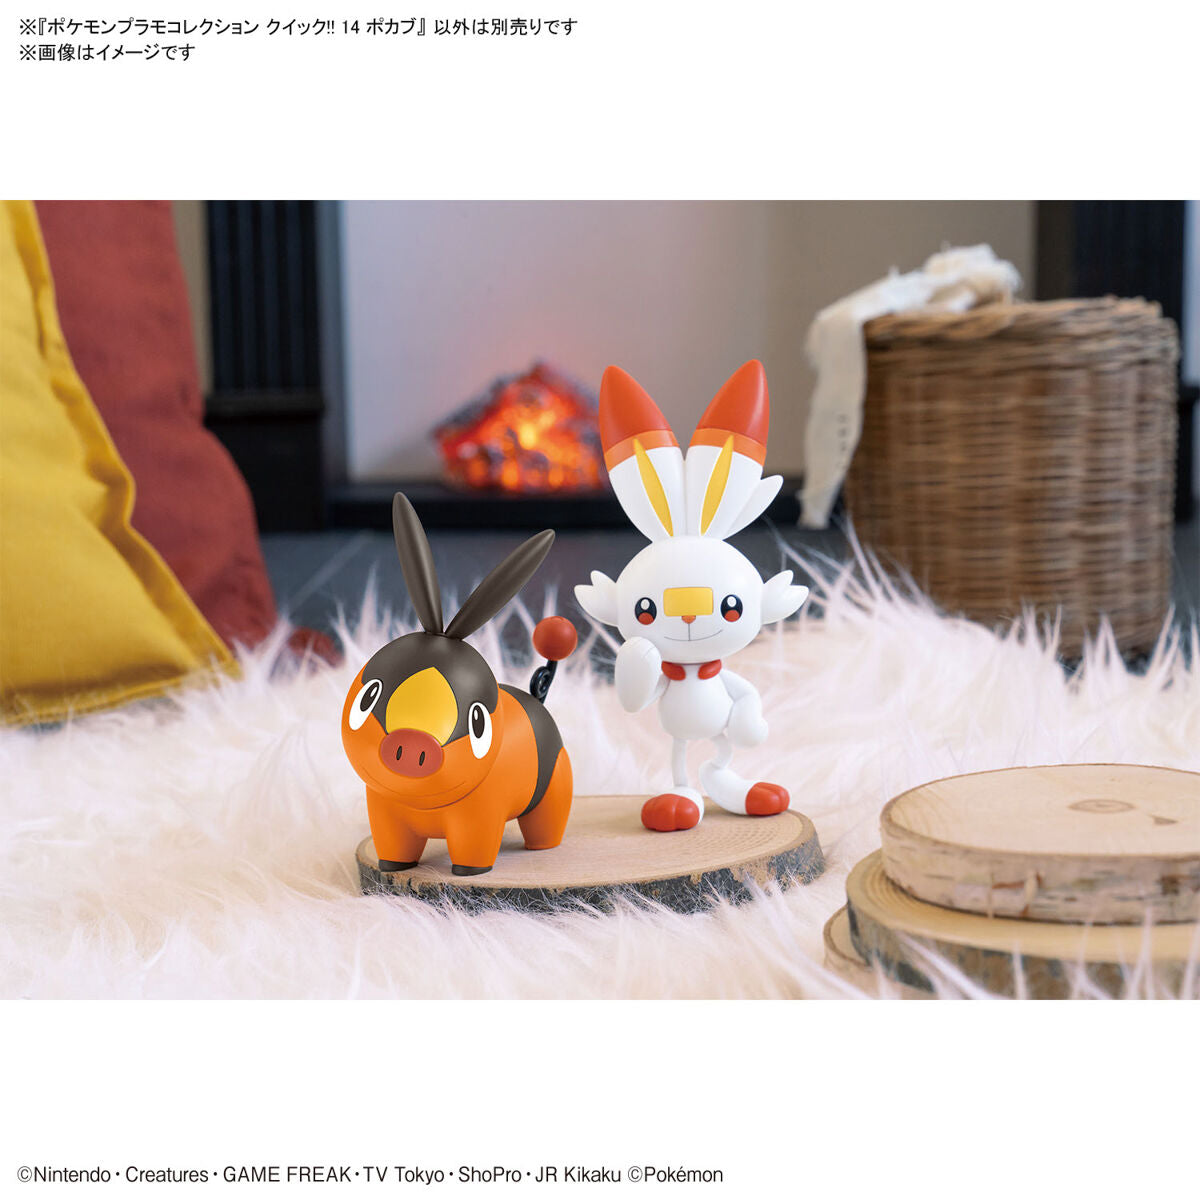 Bandai Pokemon Plamo Quick!! 014 Tepig Plastic Model Kit